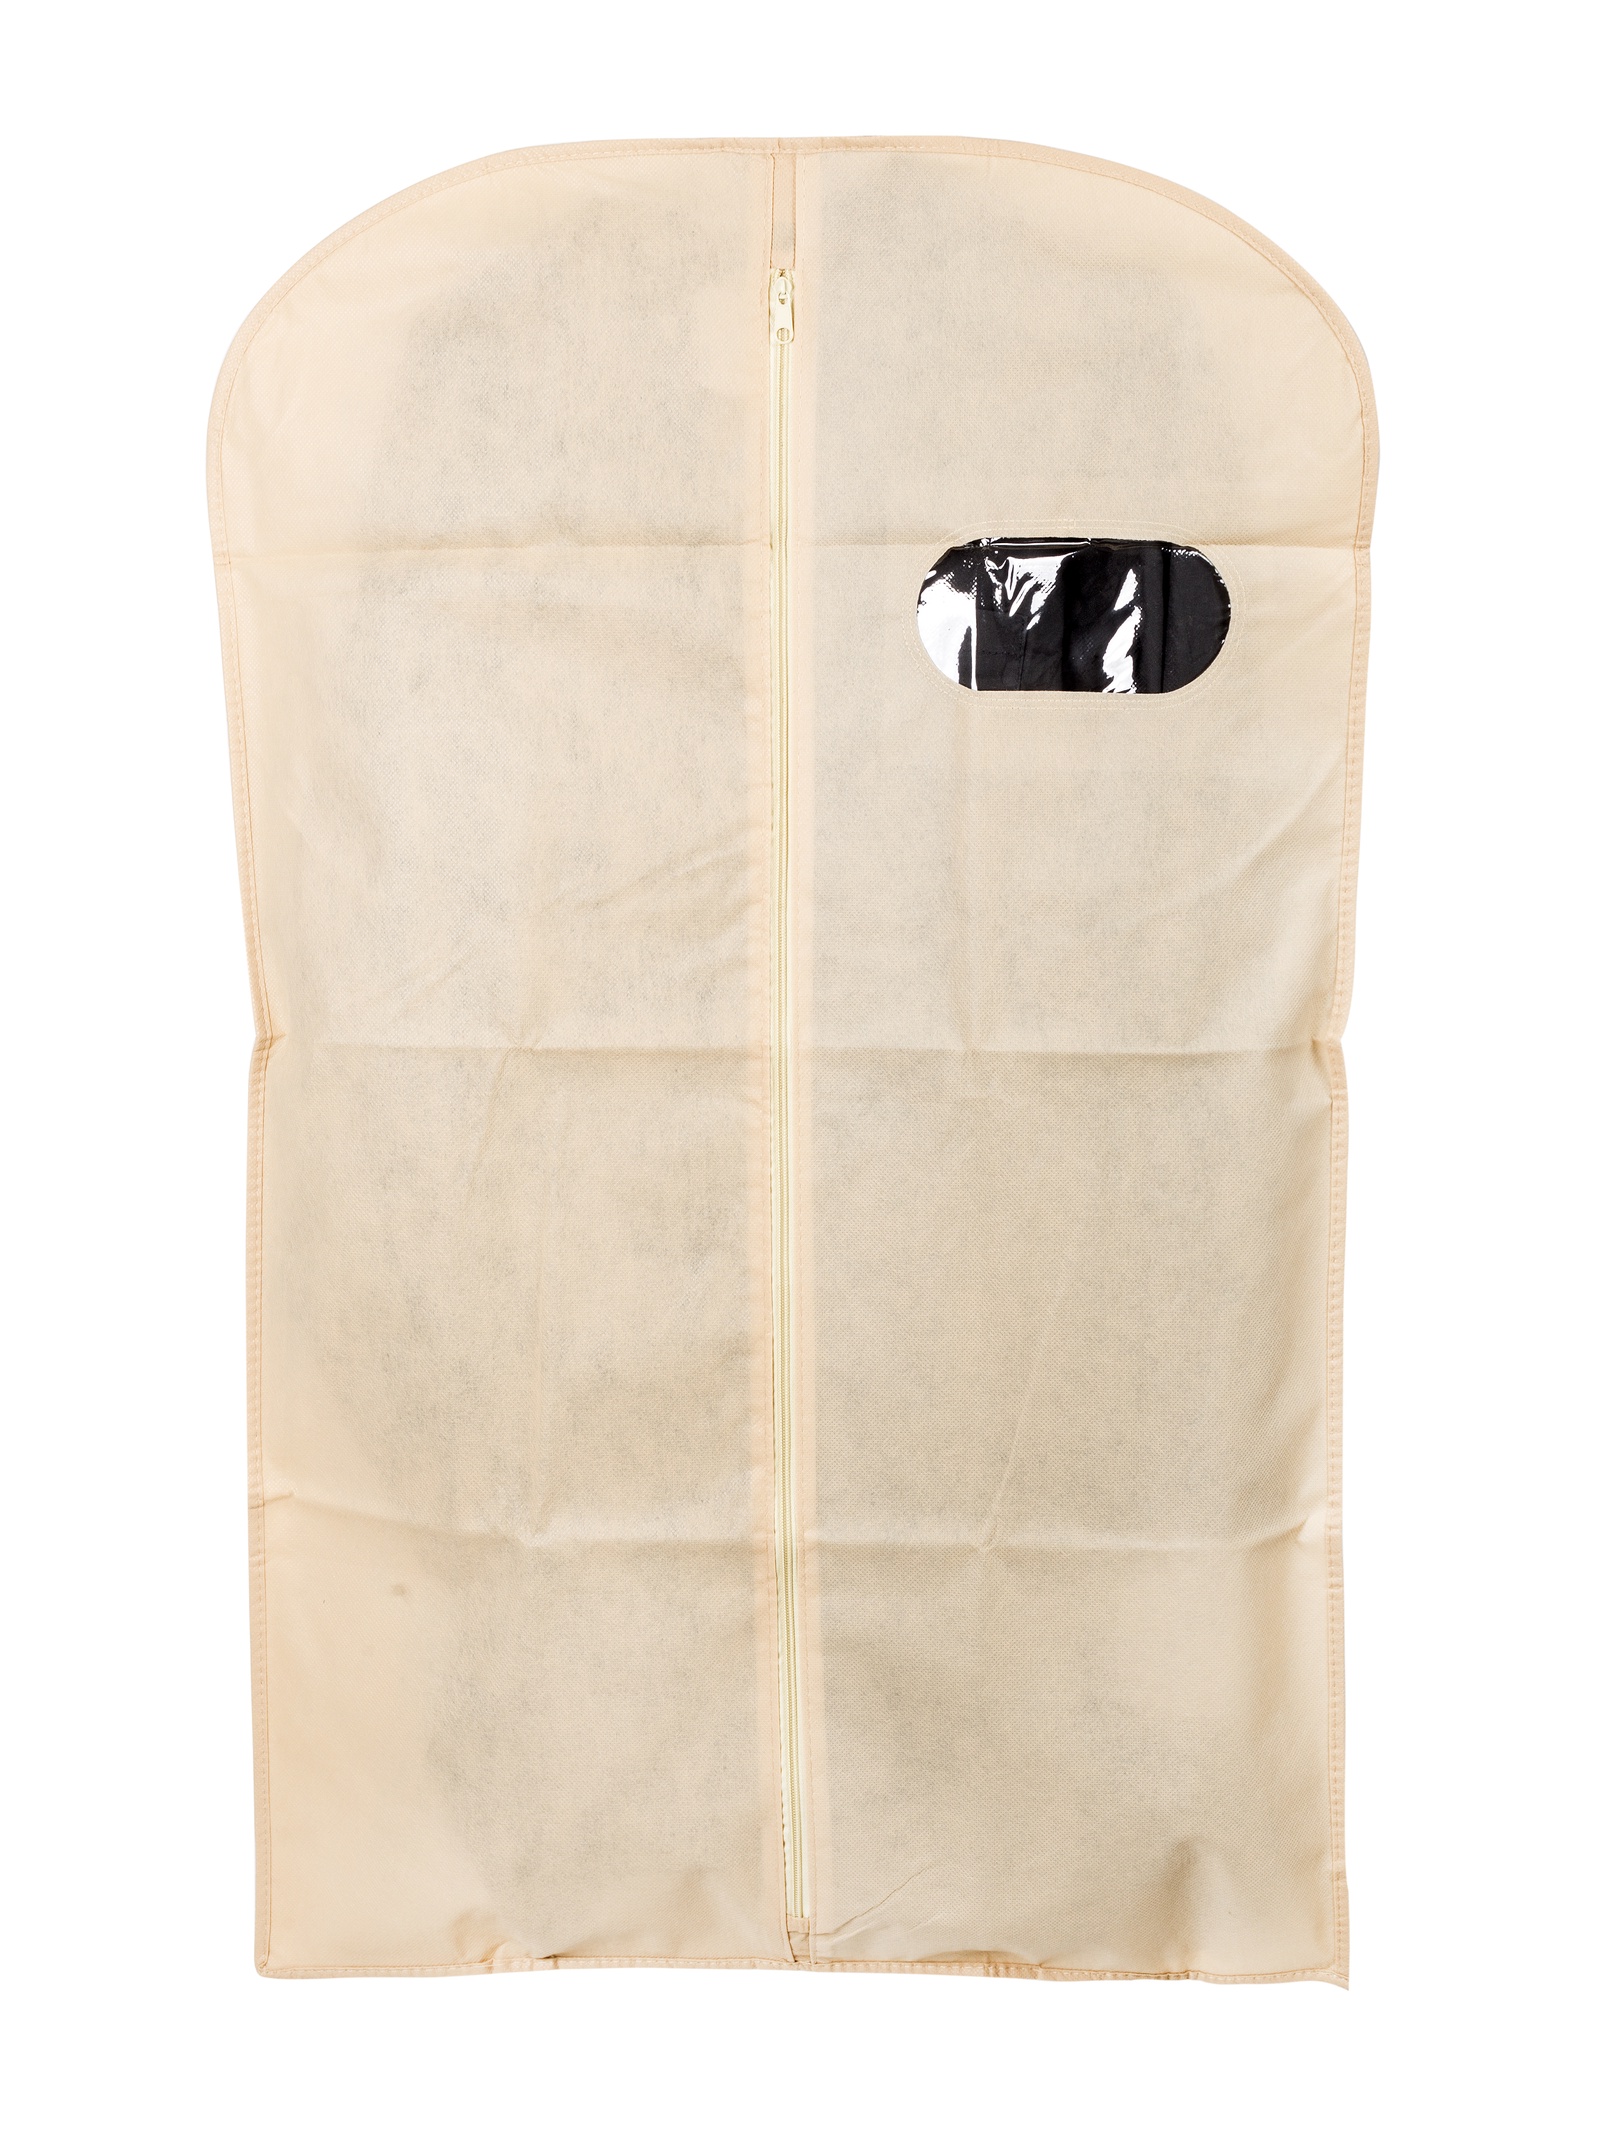 Чехол для одежды IQ Format с окном 60×100 см, 4627151966984, бежевый